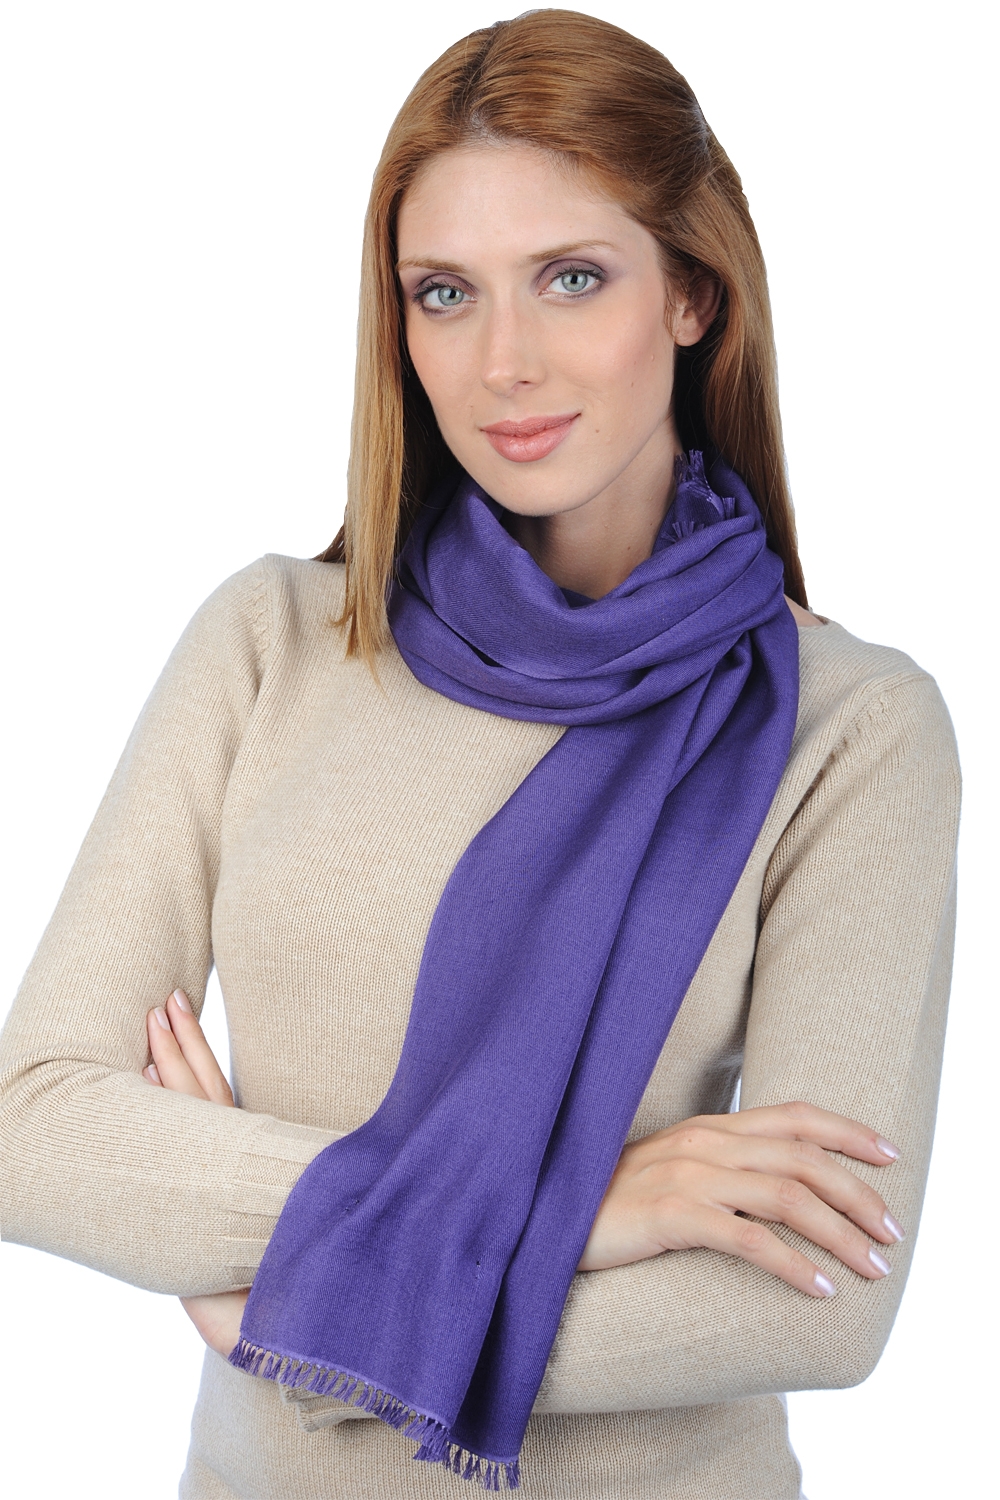 Cachemire et Soie accessoires etoles chales scarva violet passion 170x25cm